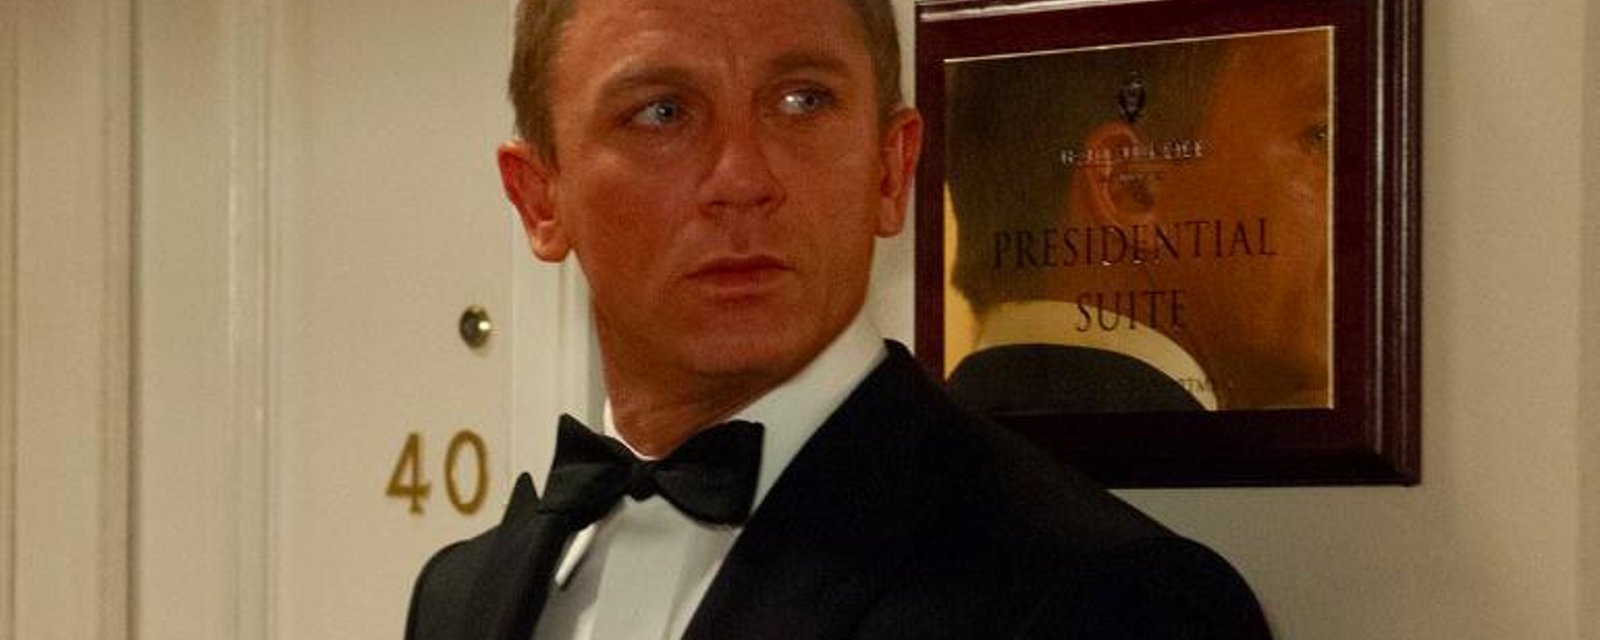 DERNIÈRE HEURE: Daniel Craig opéré après s'être blessé pendant le tournage de James Bond